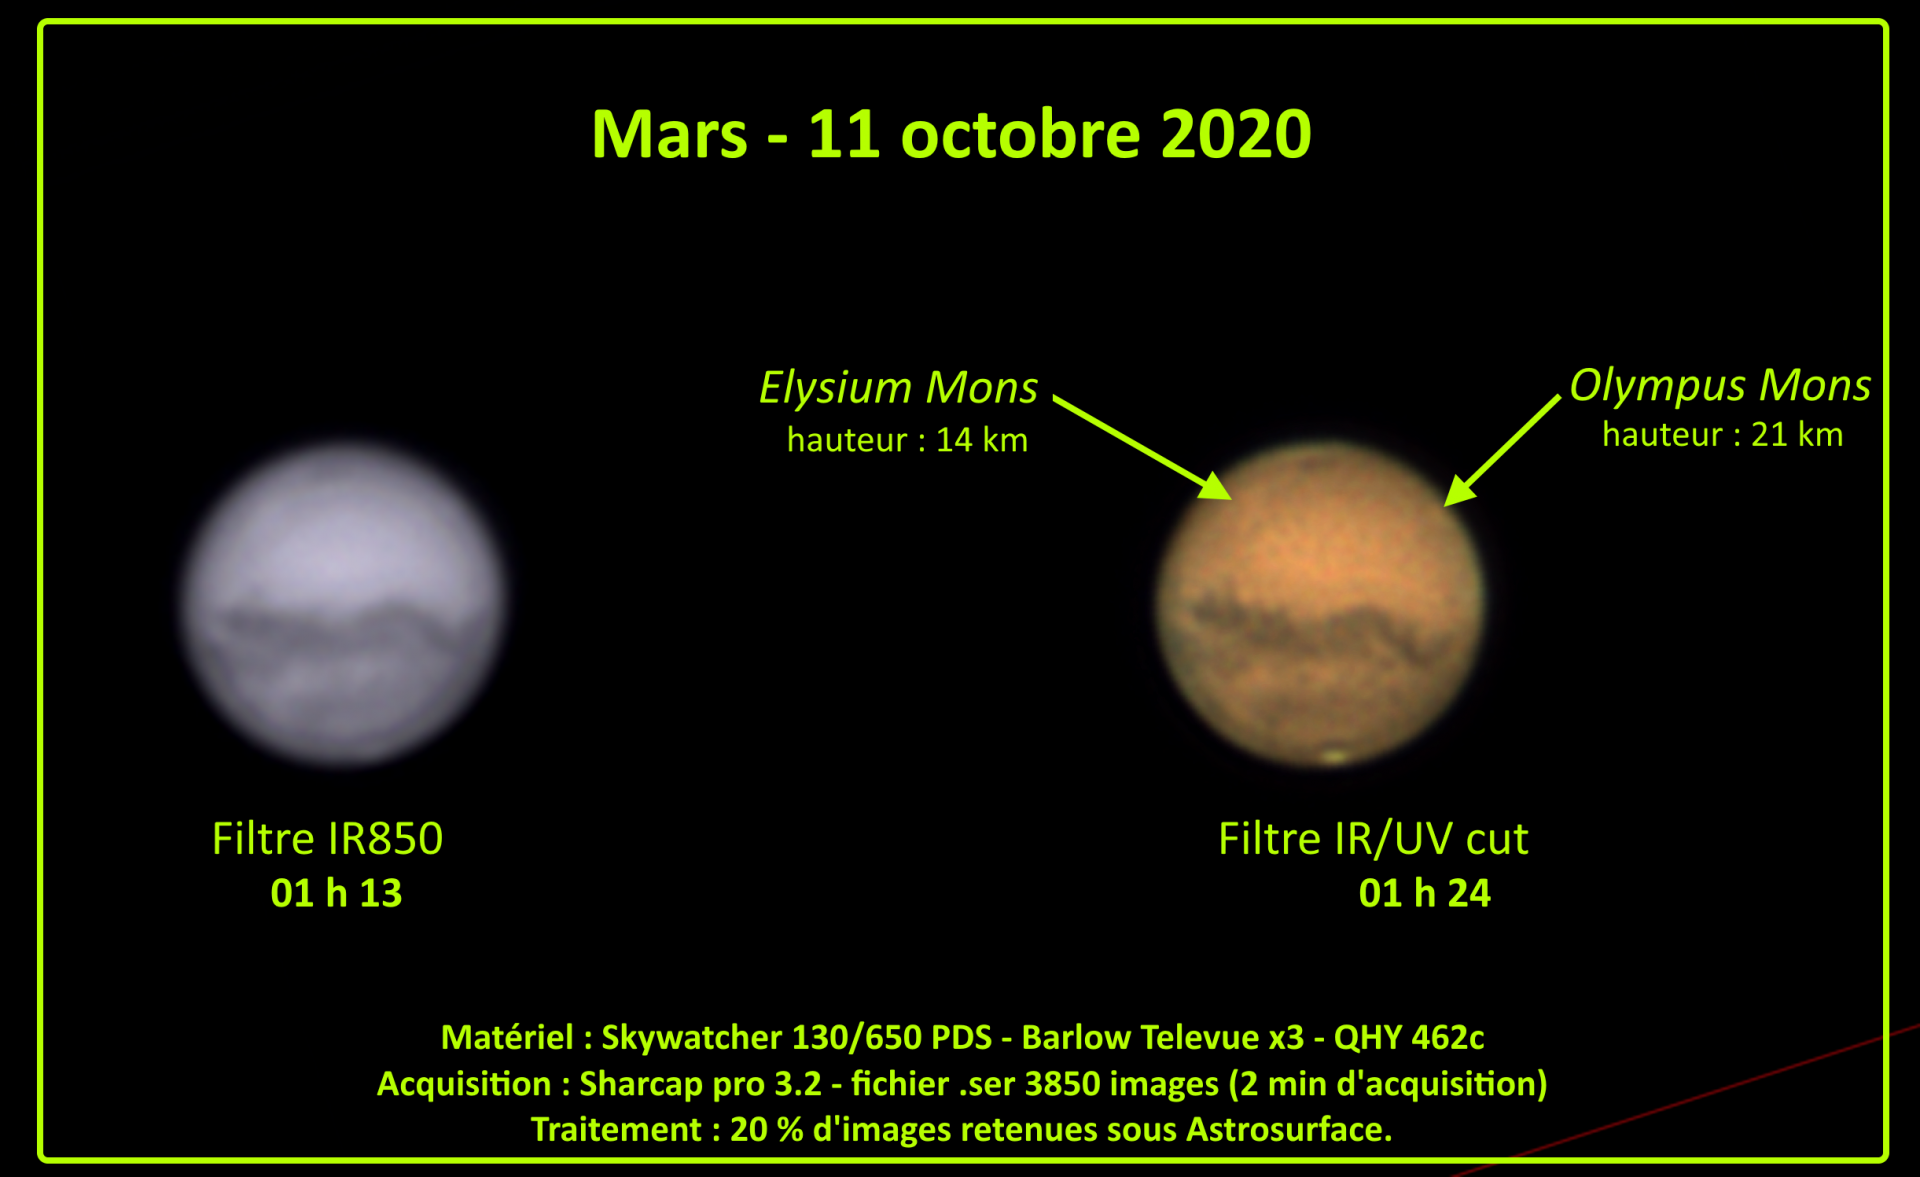 Mars 11 octobre 2020  - QHY462 + Televue x3  +130pds